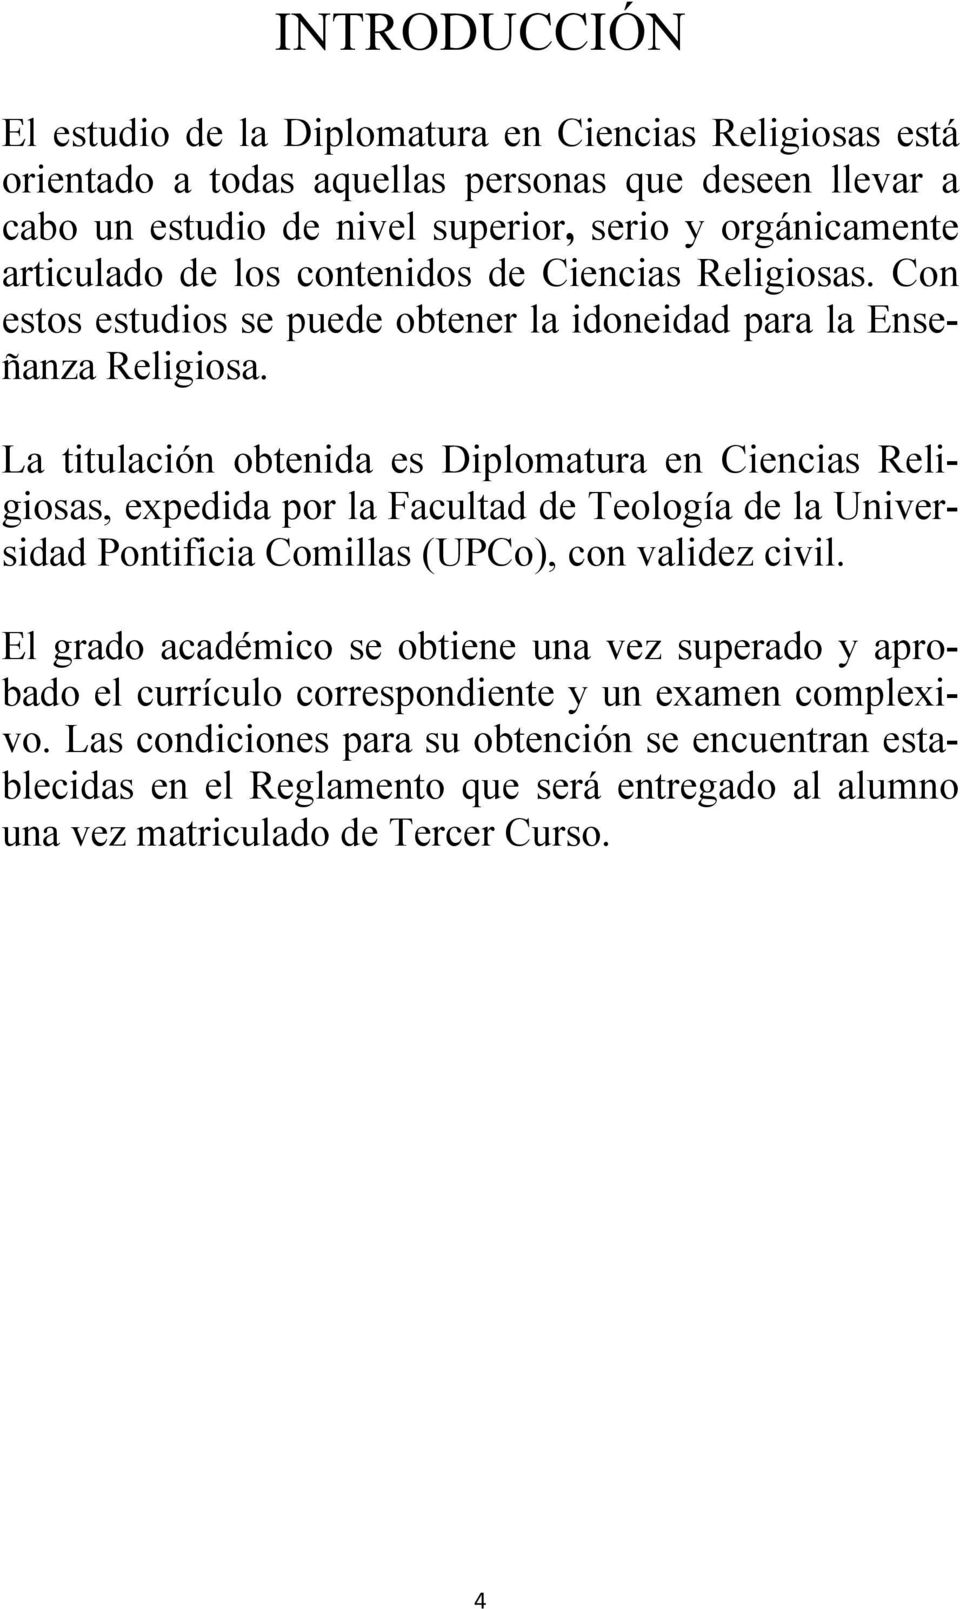 La titulación obtenida es Diplomatura en Ciencias Religiosas, expedida por la Facultad de Teología de la Universidad Pontificia Comillas (UPCo), con validez civil.